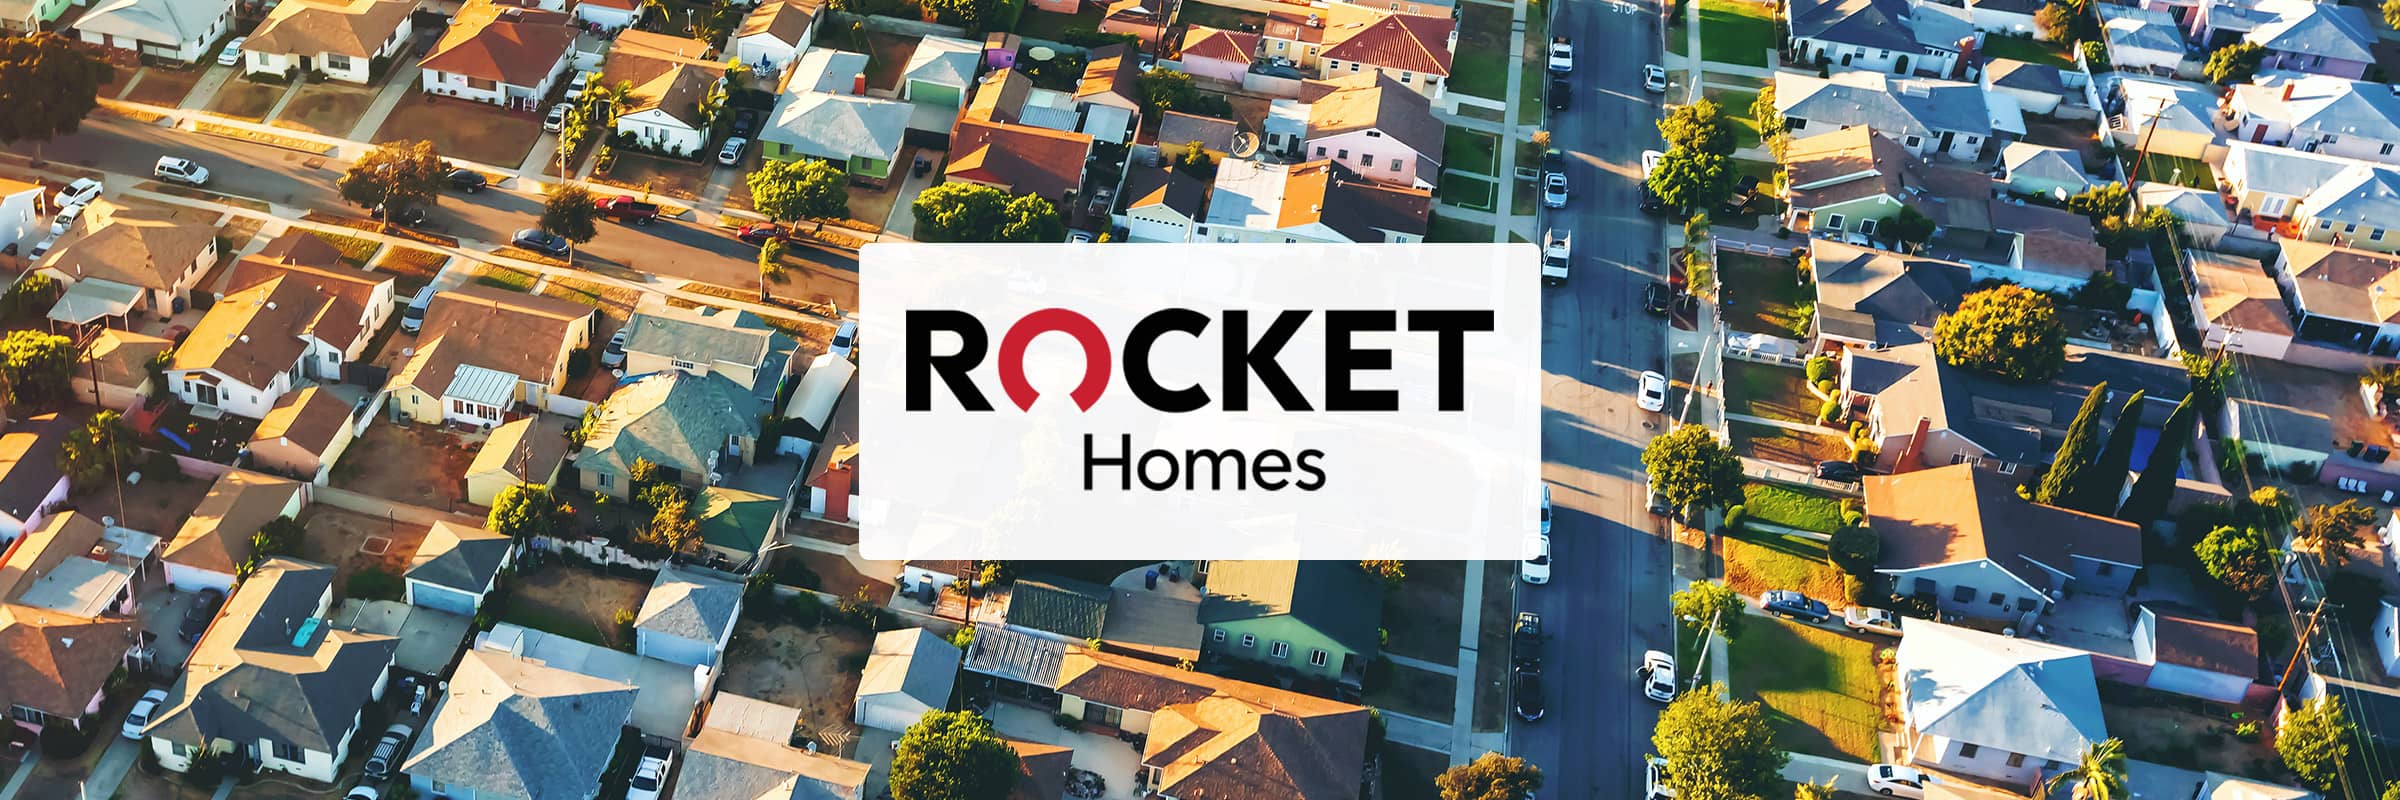 Rocket Homes Simple Platform